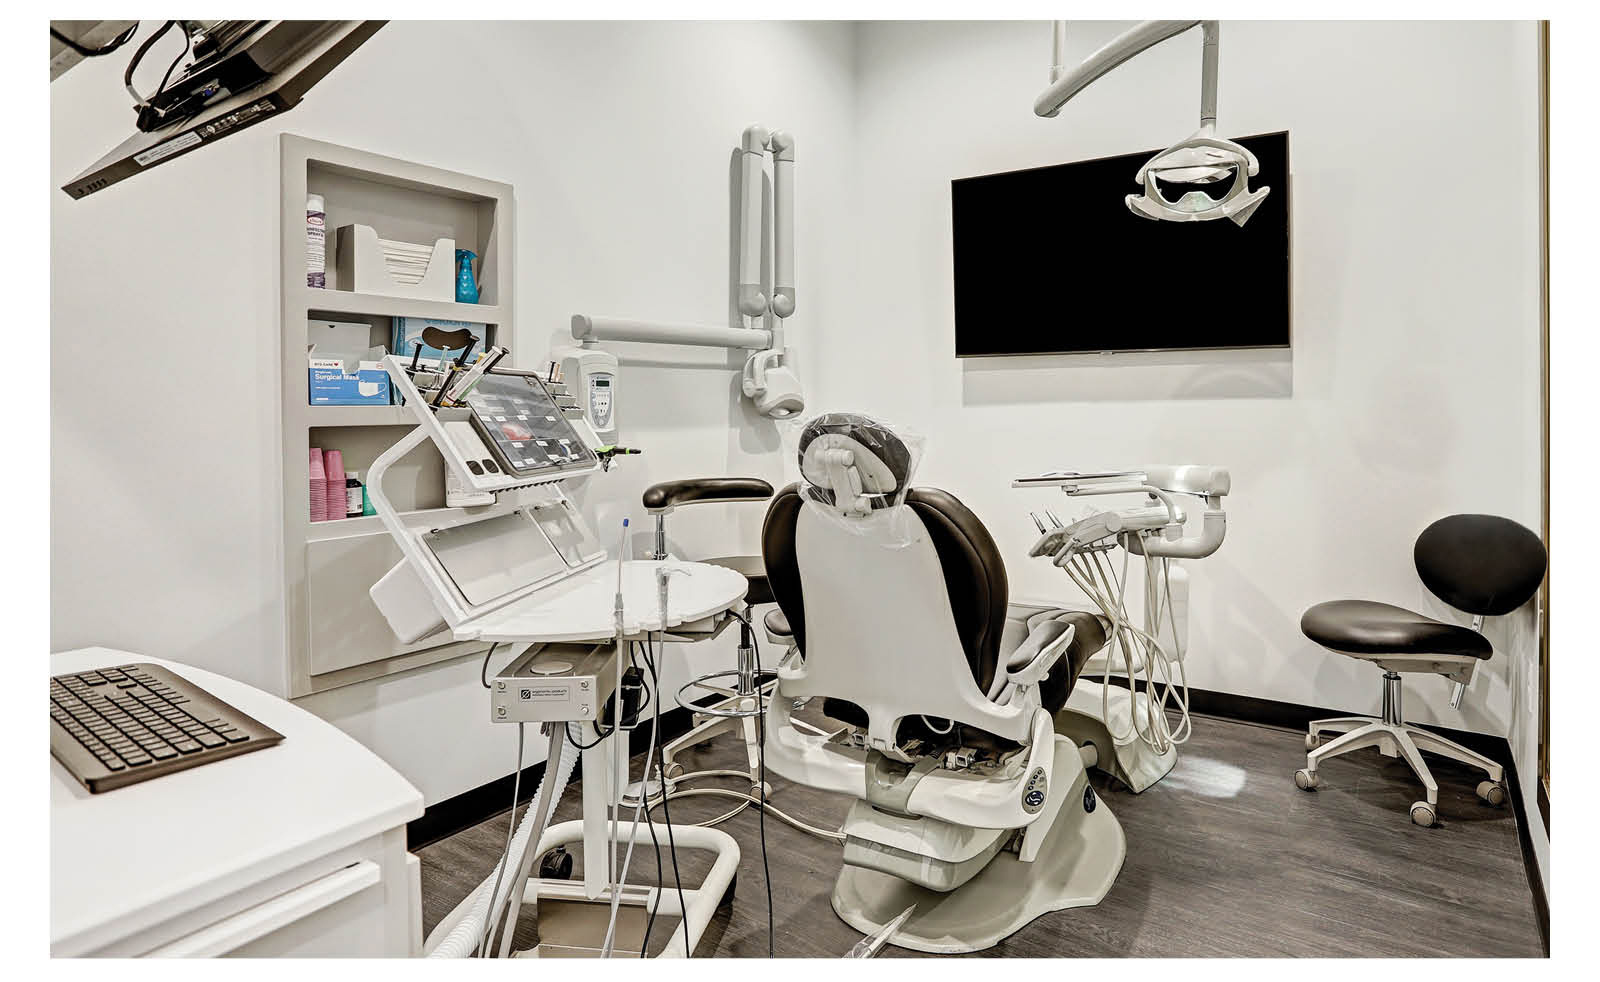 Smile Design Studios Dentistry